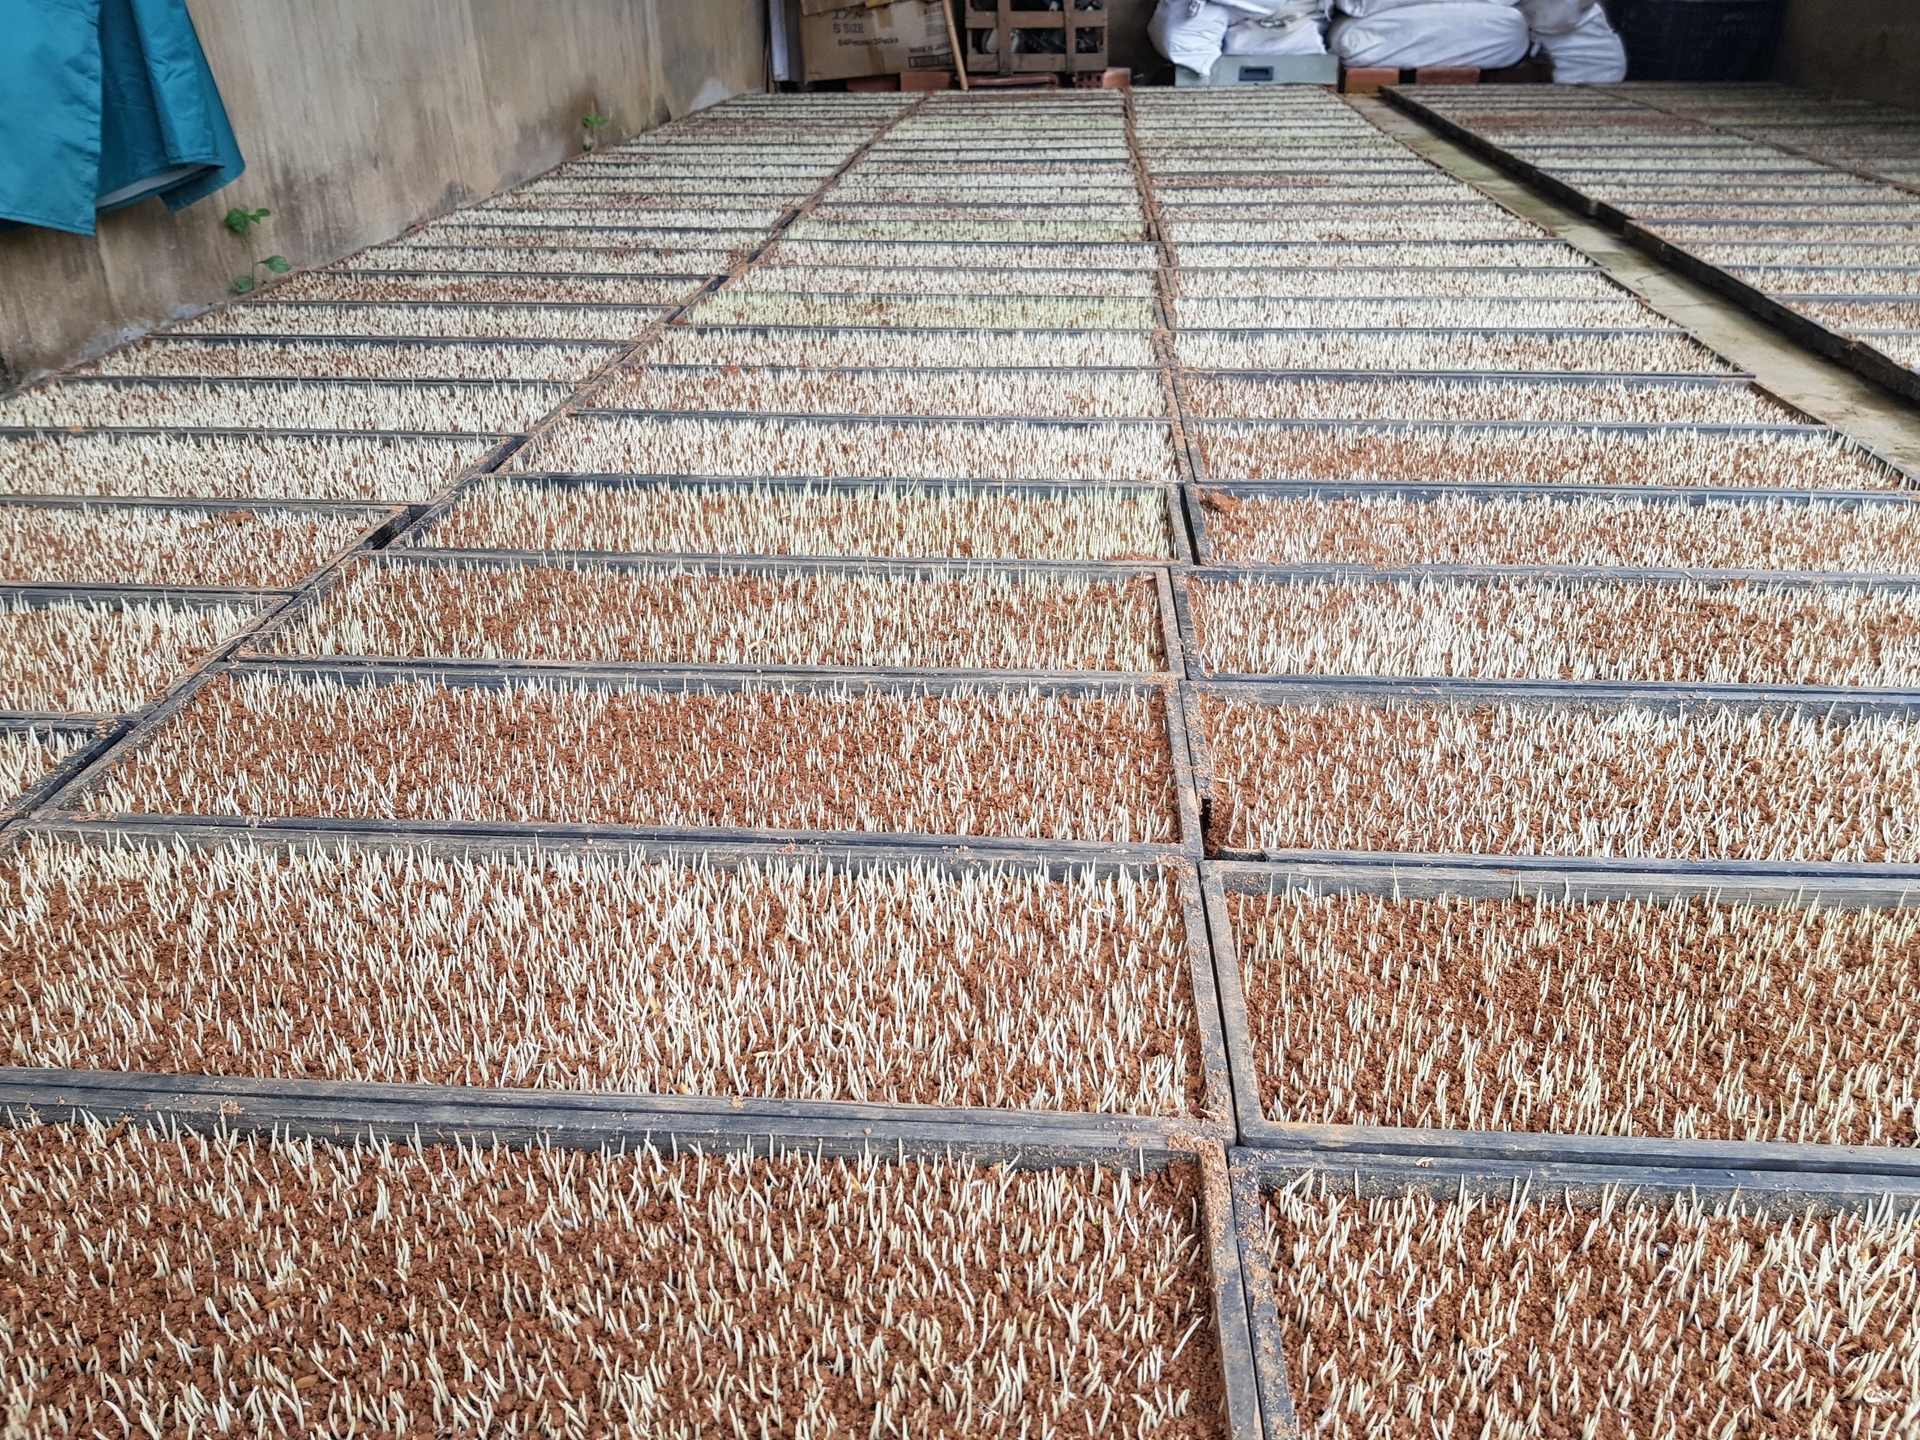 HTX Nông nghiệp Ân Tín gieo mạ để sản xuất lúa hữu cơ. Ảnh: V.Đ.T.